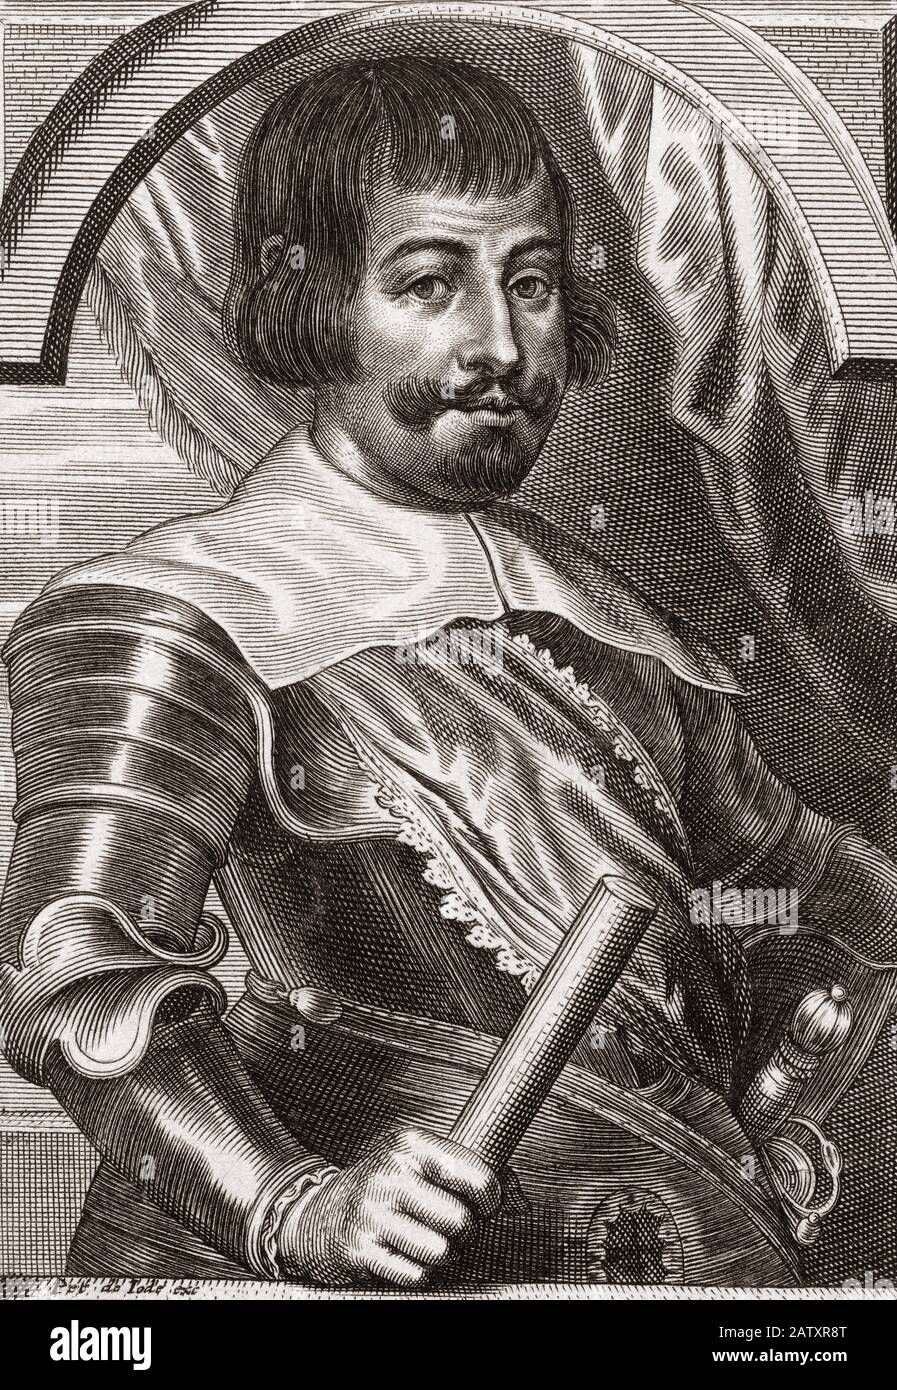 Francisco de Melo, 1597 - 1651. Portugiesisch geborene Adelige und General, der Interimsgouvernor der südlichen Niederlande wurde. Er war ein Befehlshaber der spanischen Armee, die von den Franzosen bei der Schlacht von Rocroi besiegt wurde. Stockfoto